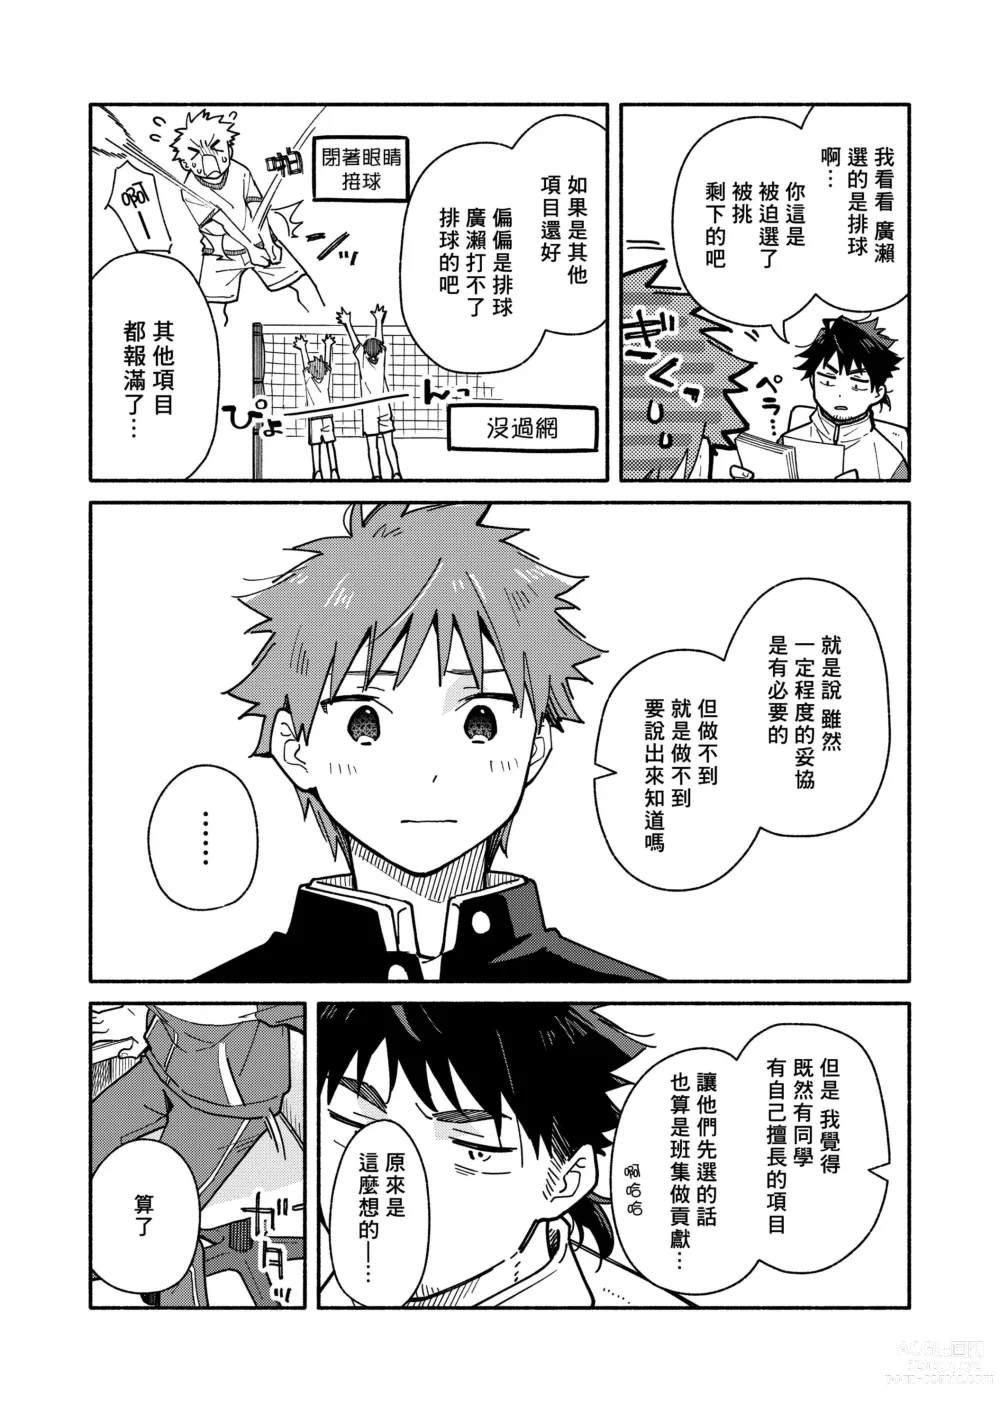 Page 6 of doujinshi 鬼畜老師的加害授課